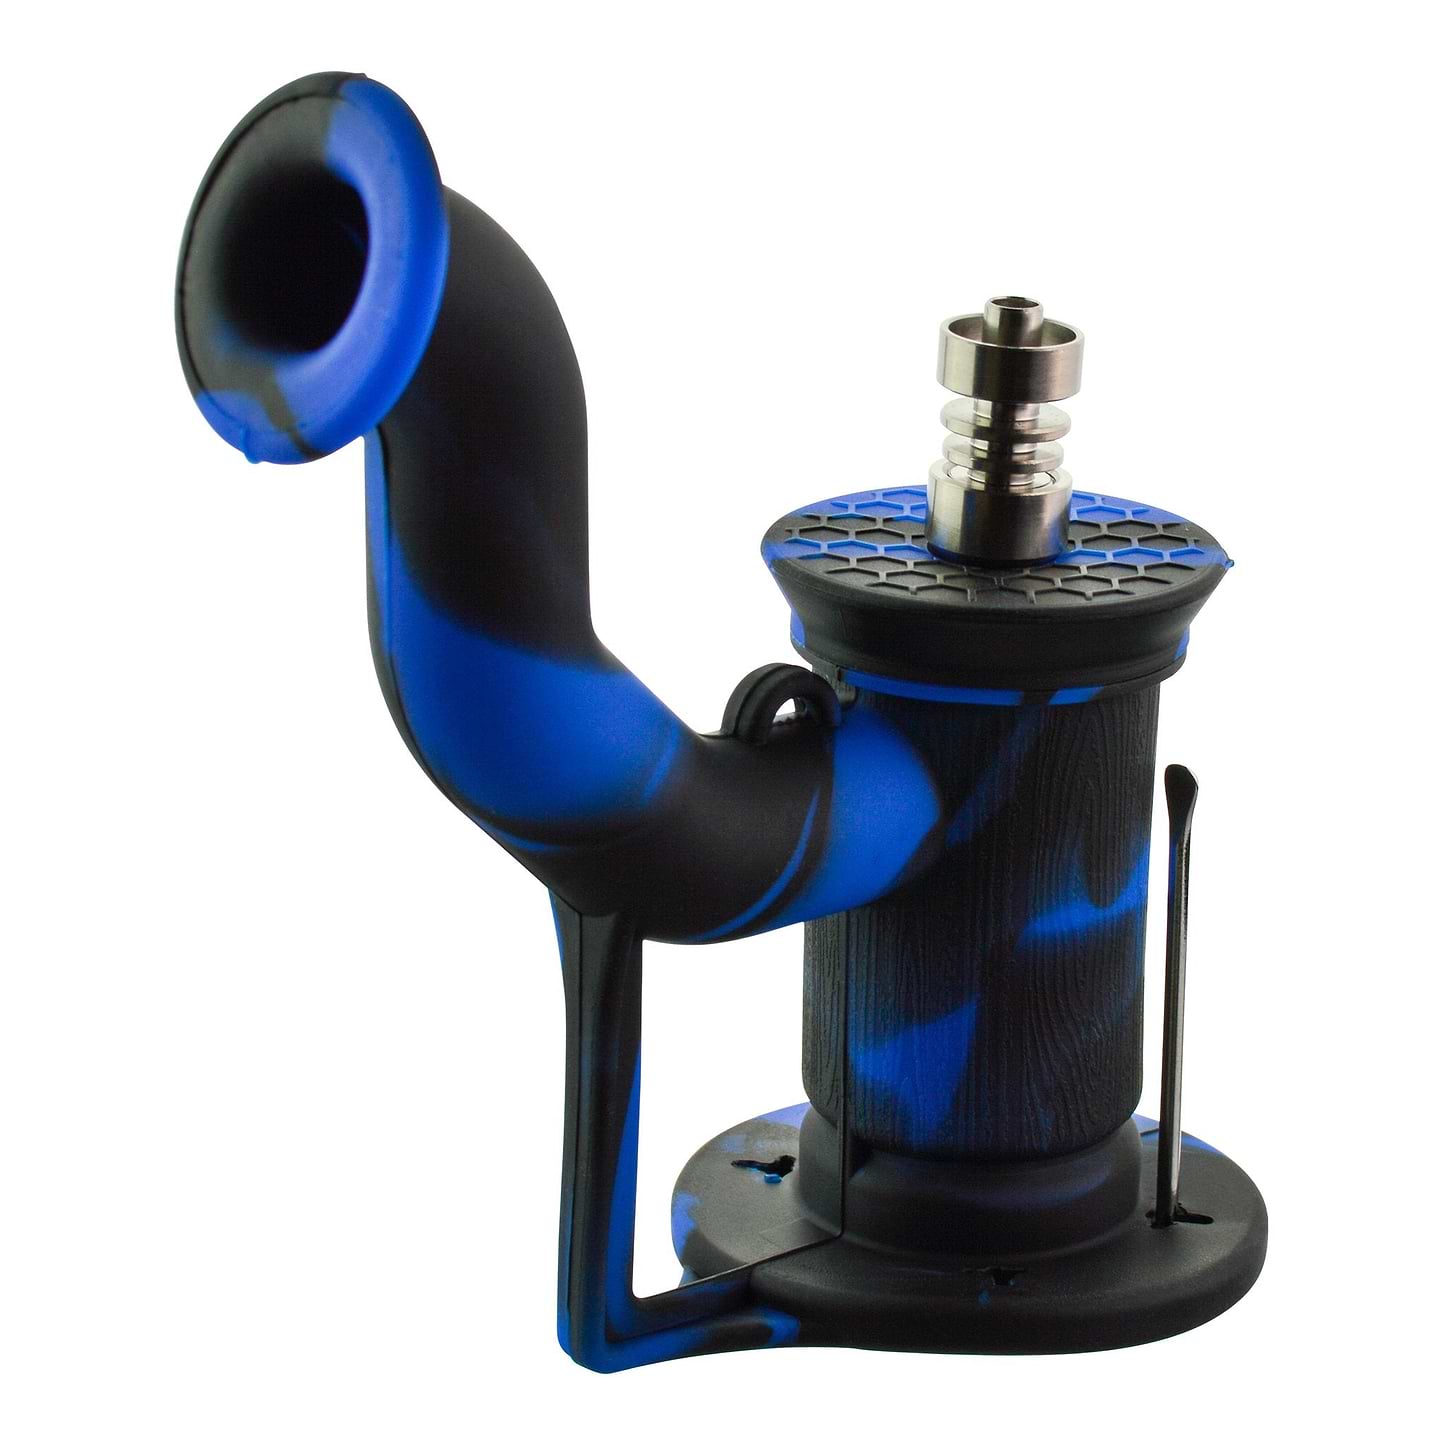 Silicone Oil Barrel Pipe - 6in Blue / Black